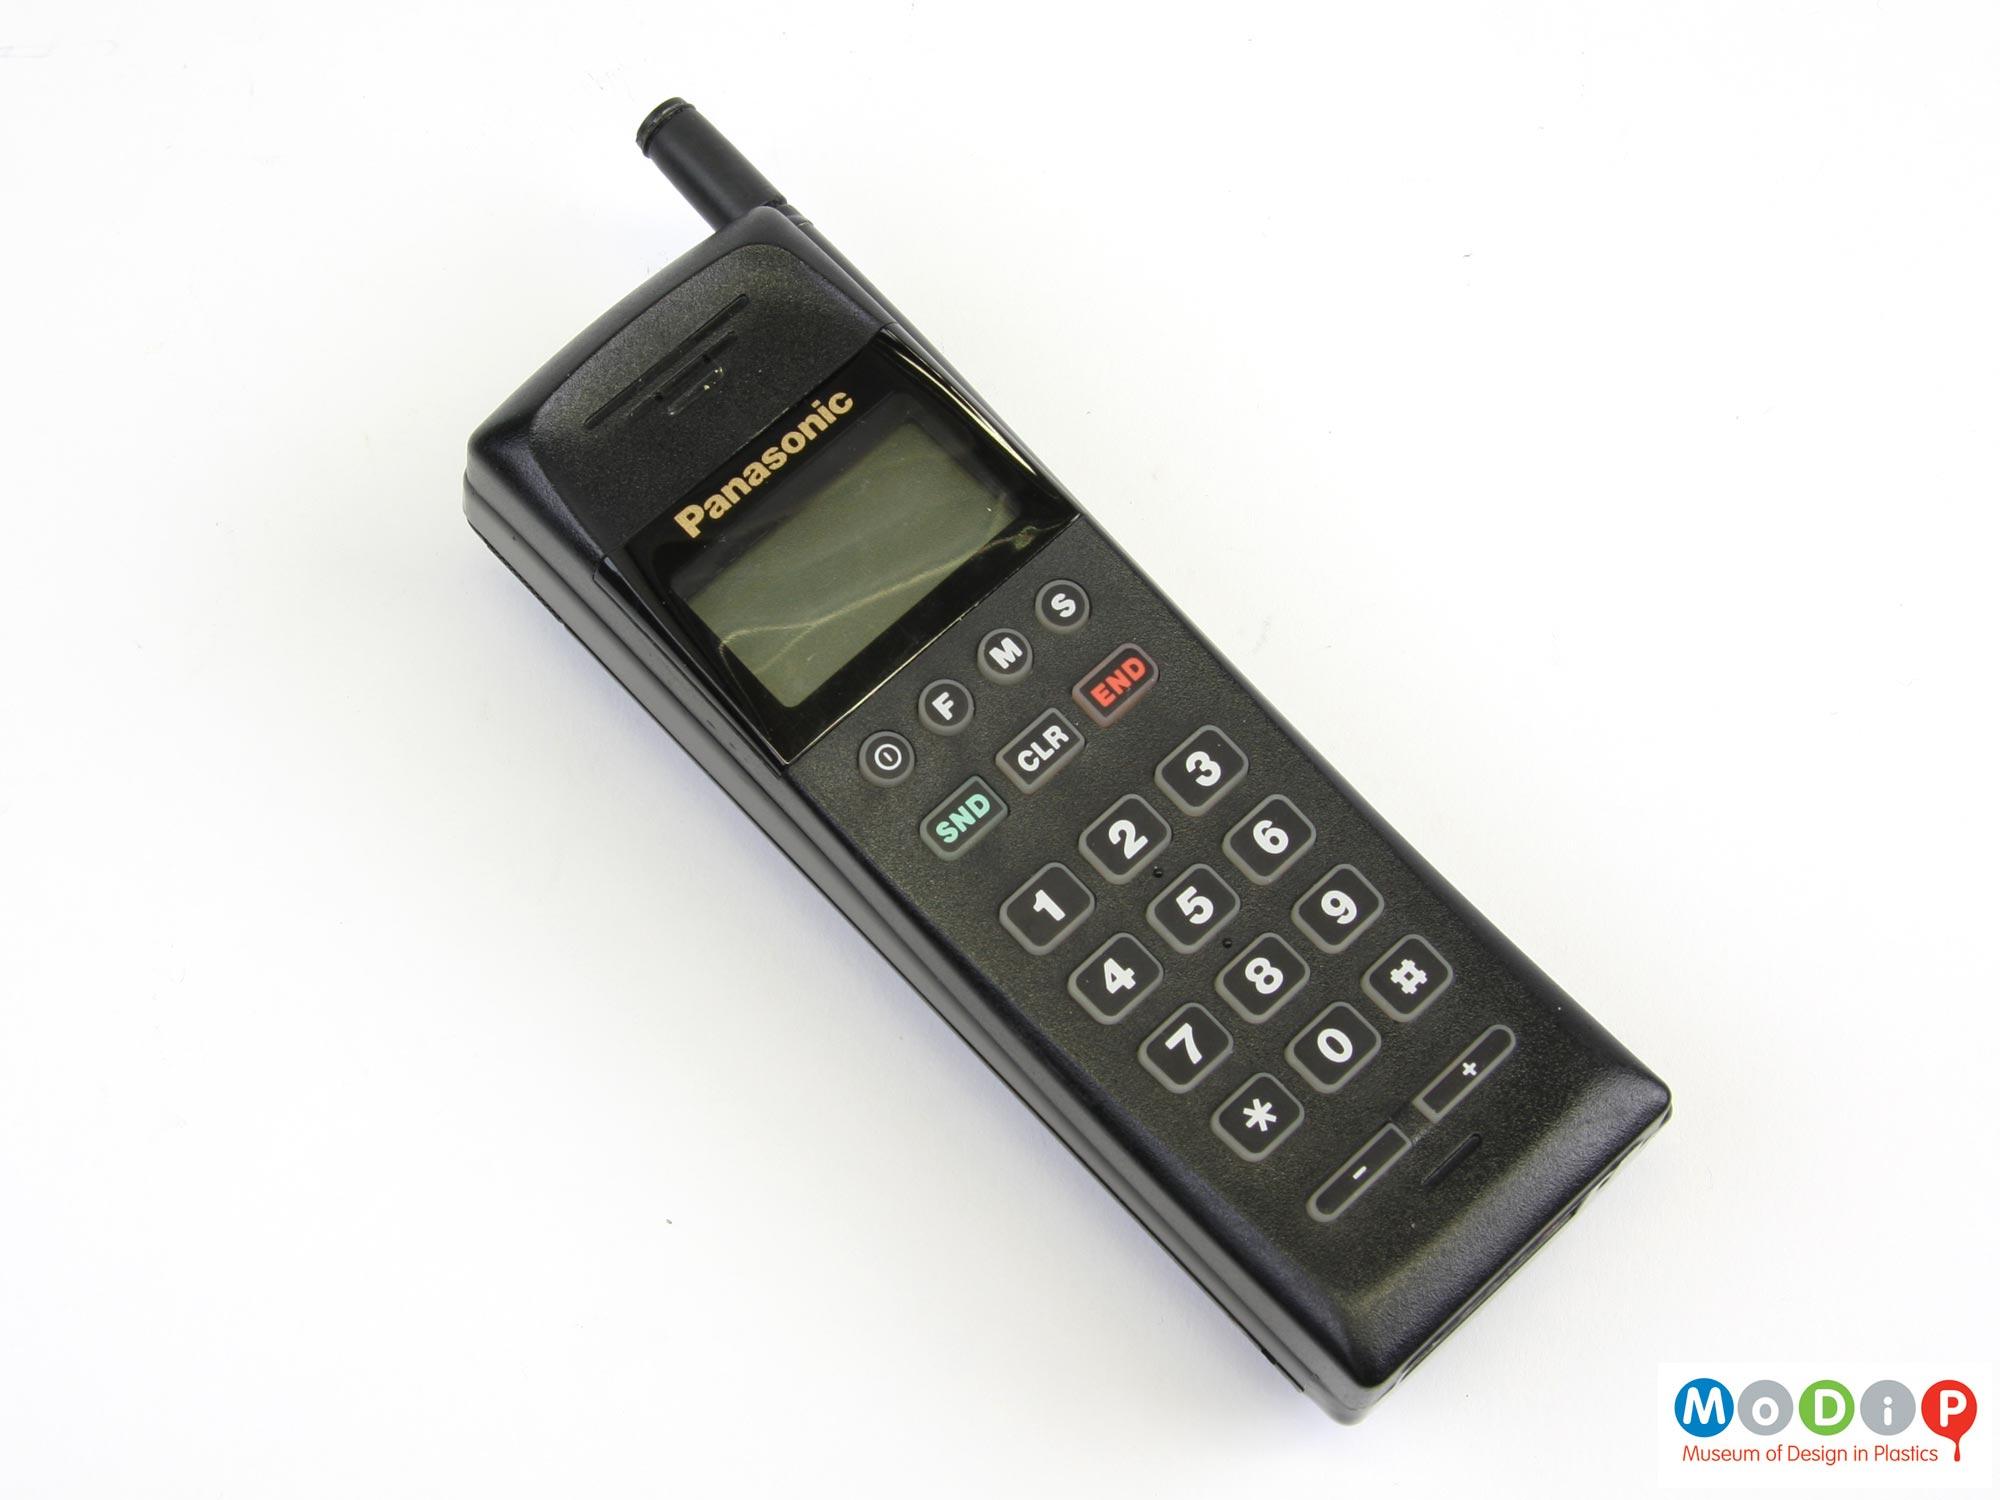 Panasonic EB-3650 mobile phone | Museum of Design in Plastics